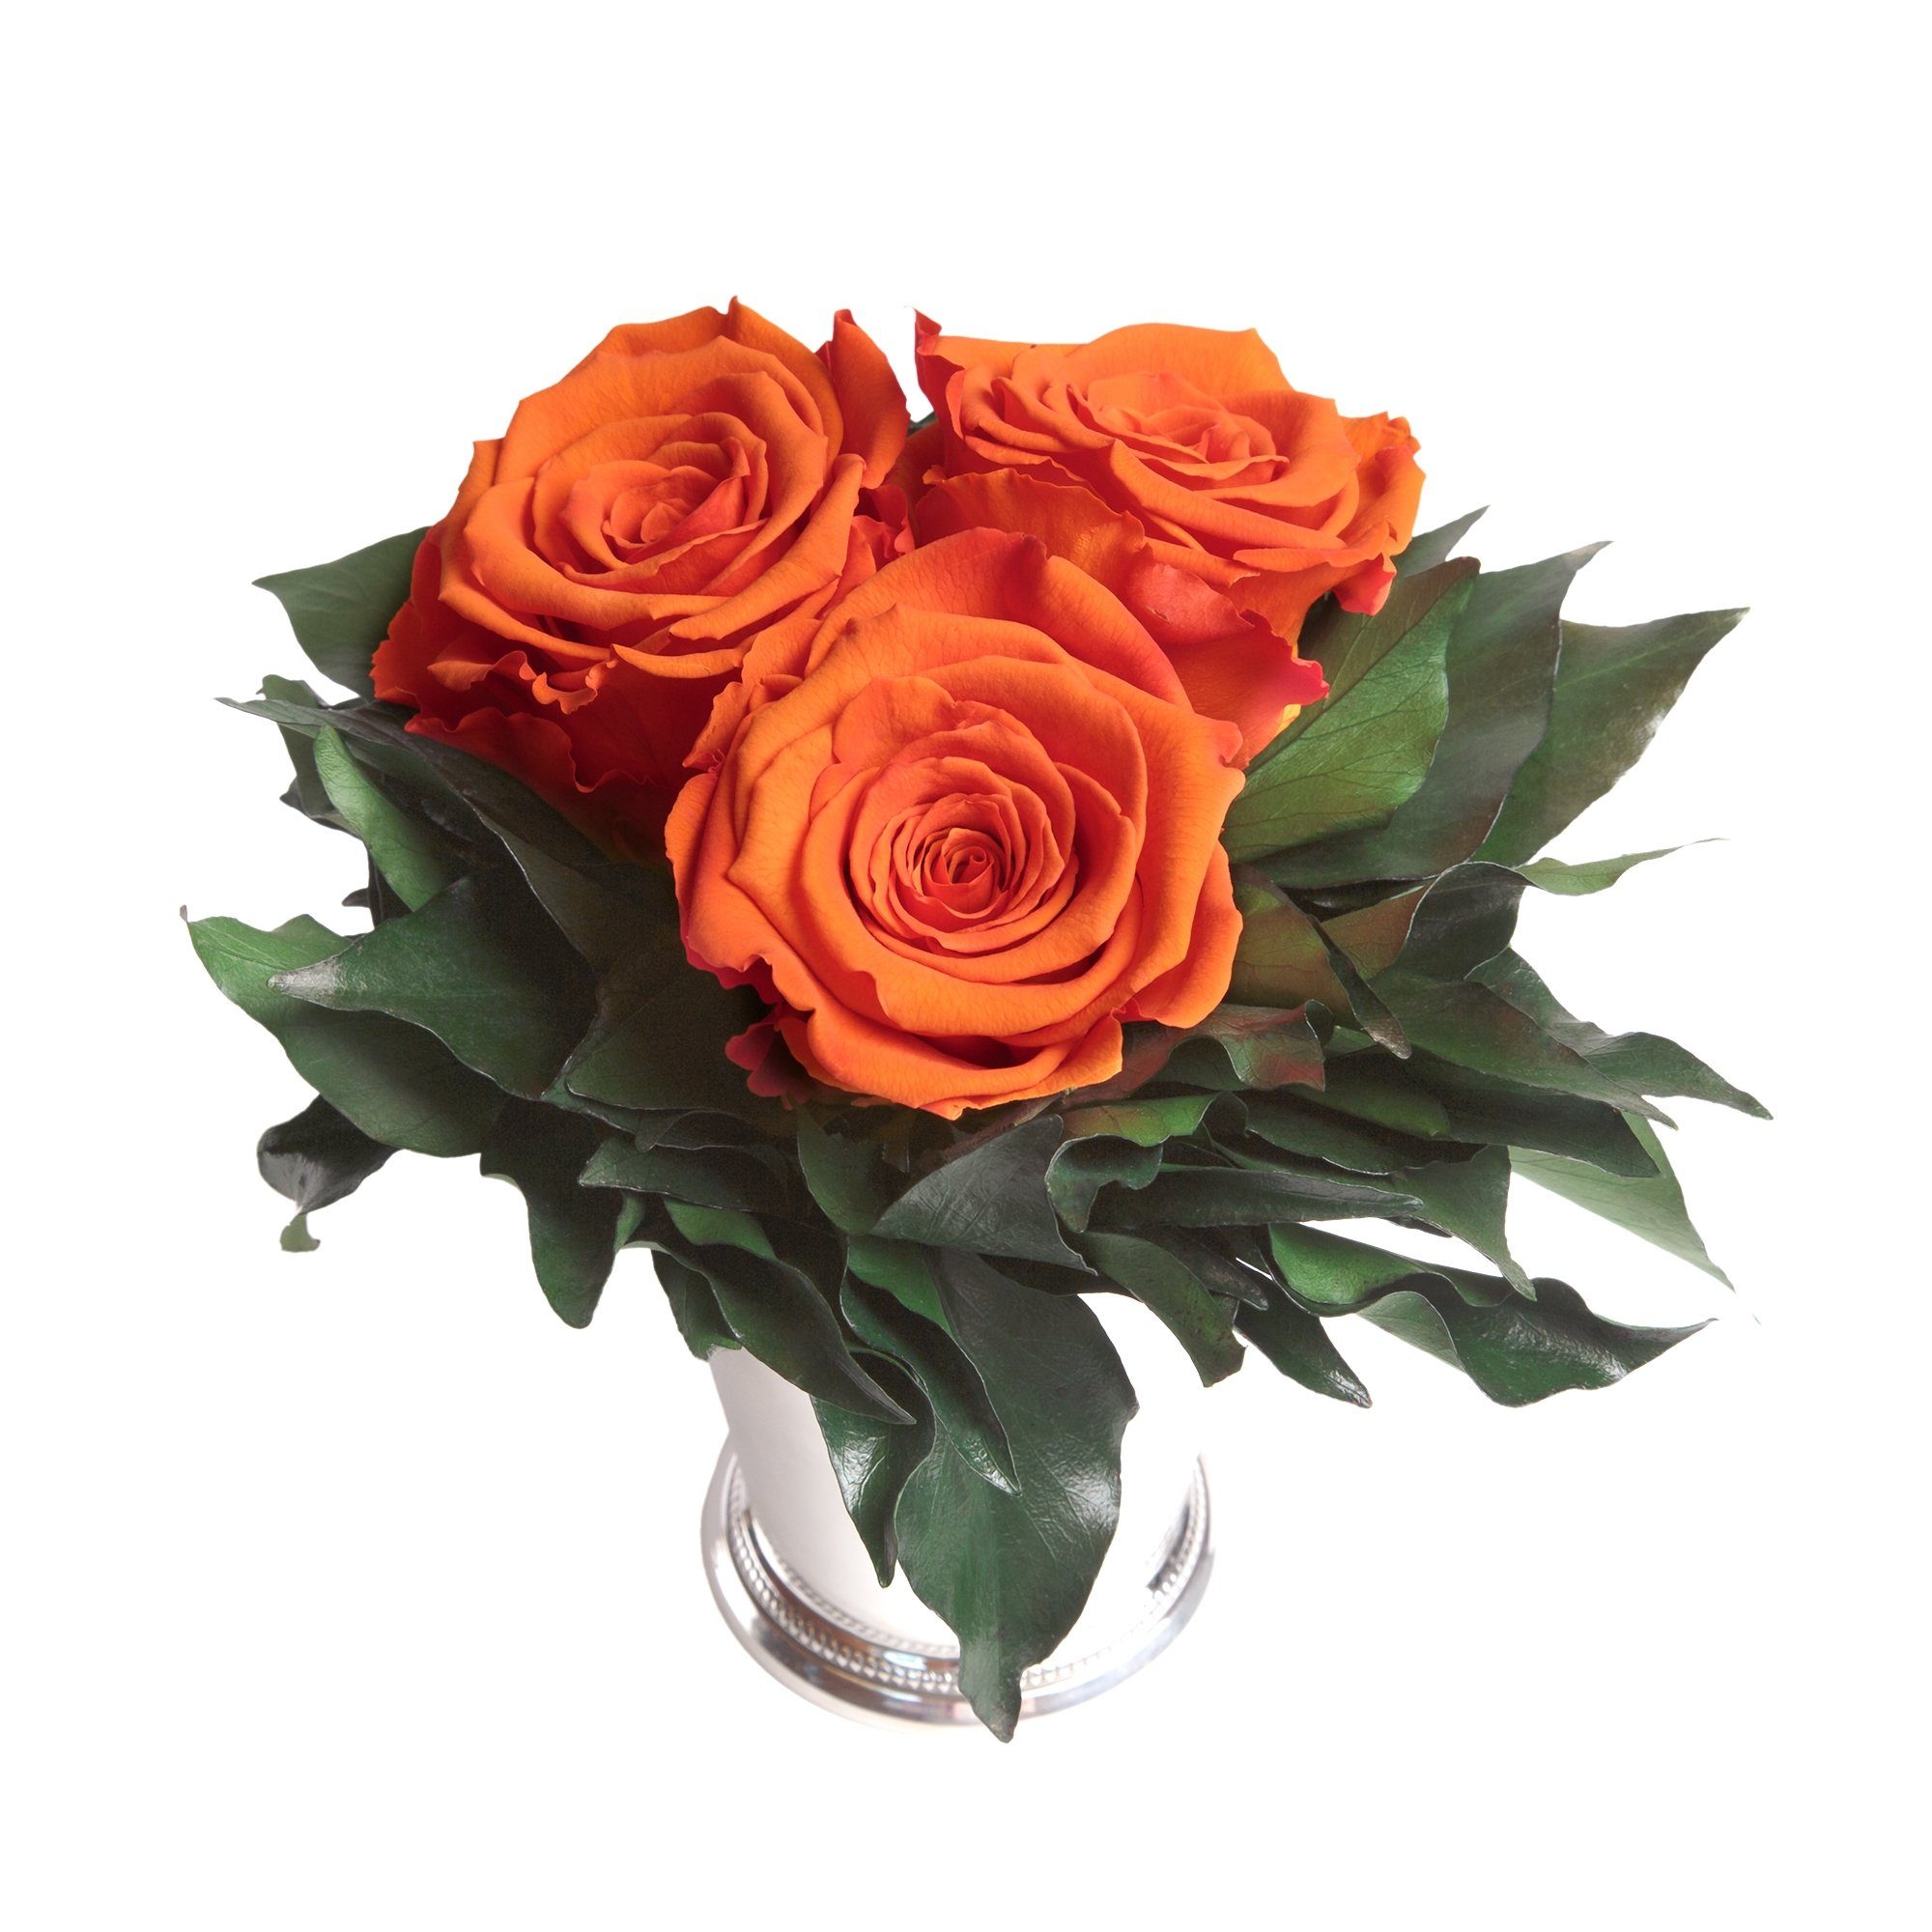 Kunstorchidee 3 Infinity Rose Rose, 15 Orange Jahre Blumenstrauß Rosen Heidelberg, SCHULZ haltbar silberfarbene Deko ROSEMARIE Höhe bis Vase cm, zu 3 Wohnzimmer